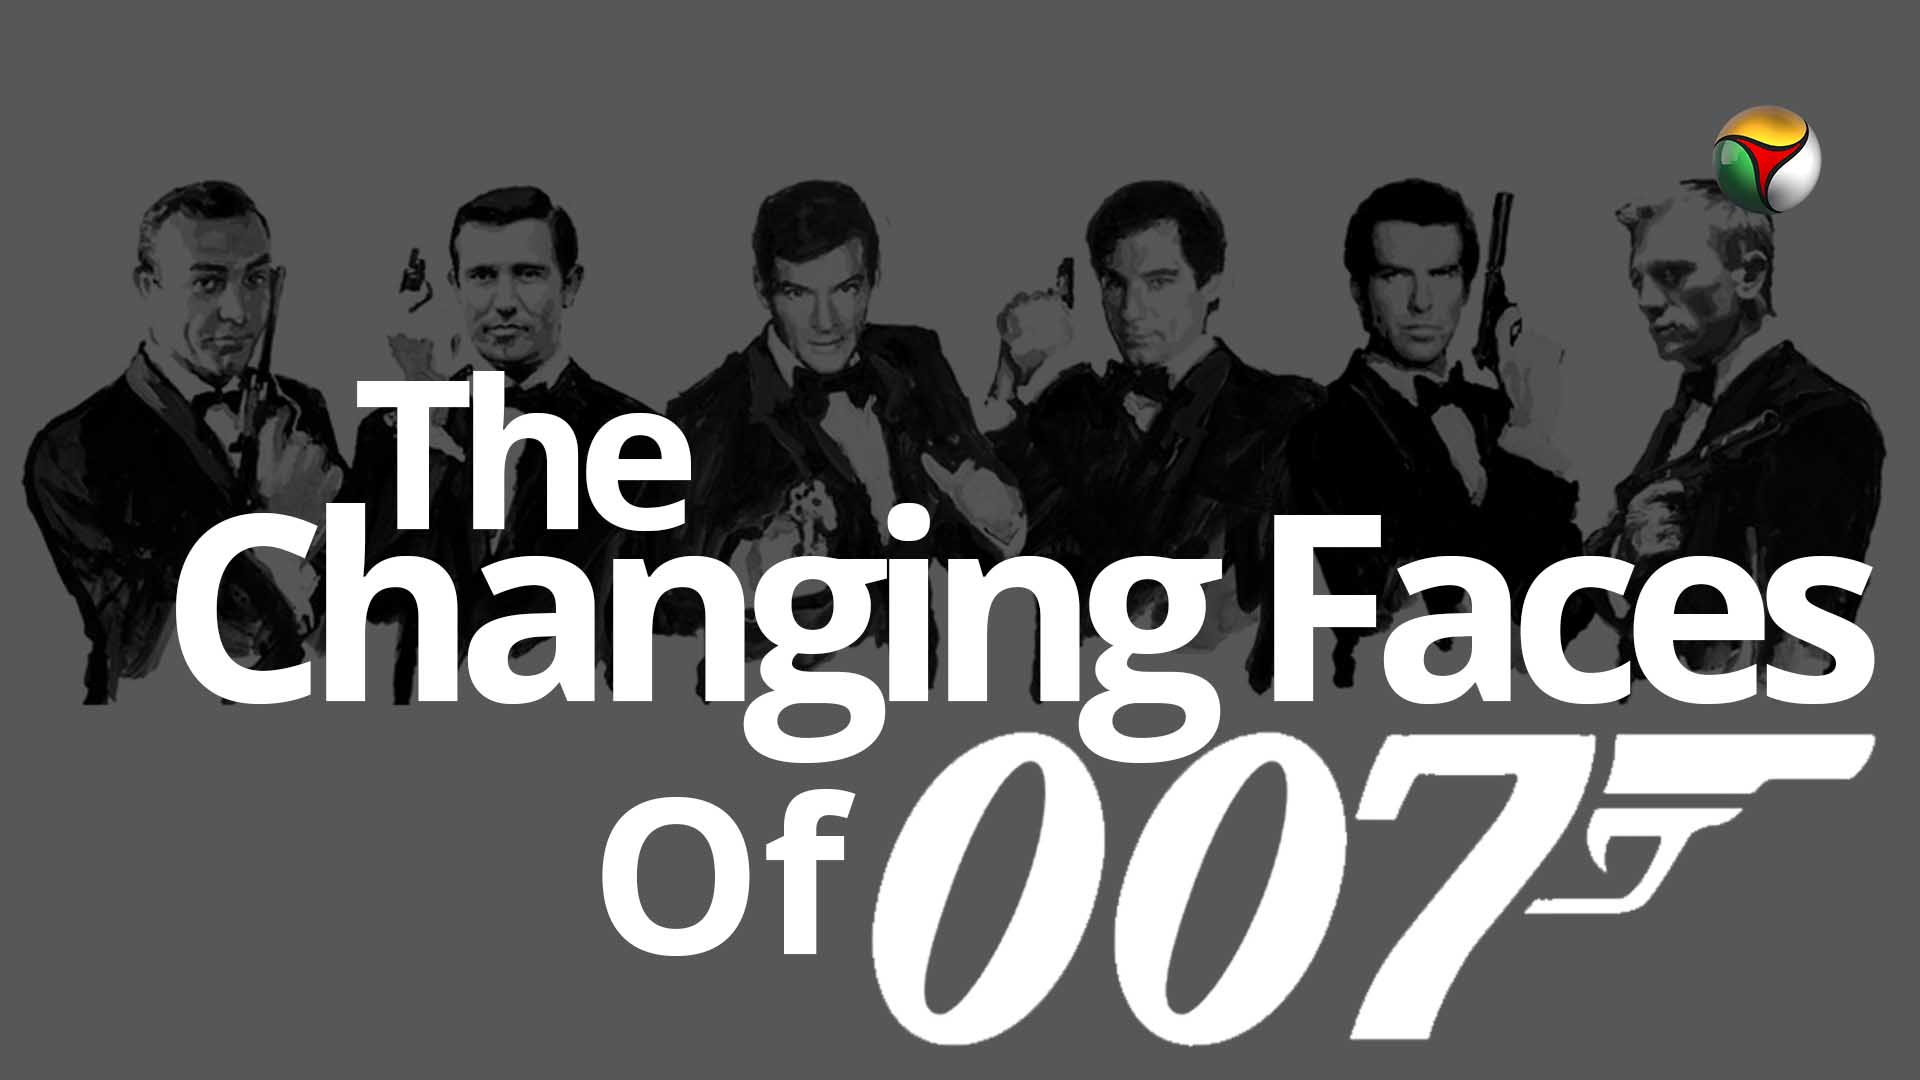 James Bond, 007, No Time To Die, Bond25, Sean Connery, Daniel Craig, Timothy Dalton, Pierce Brosnan